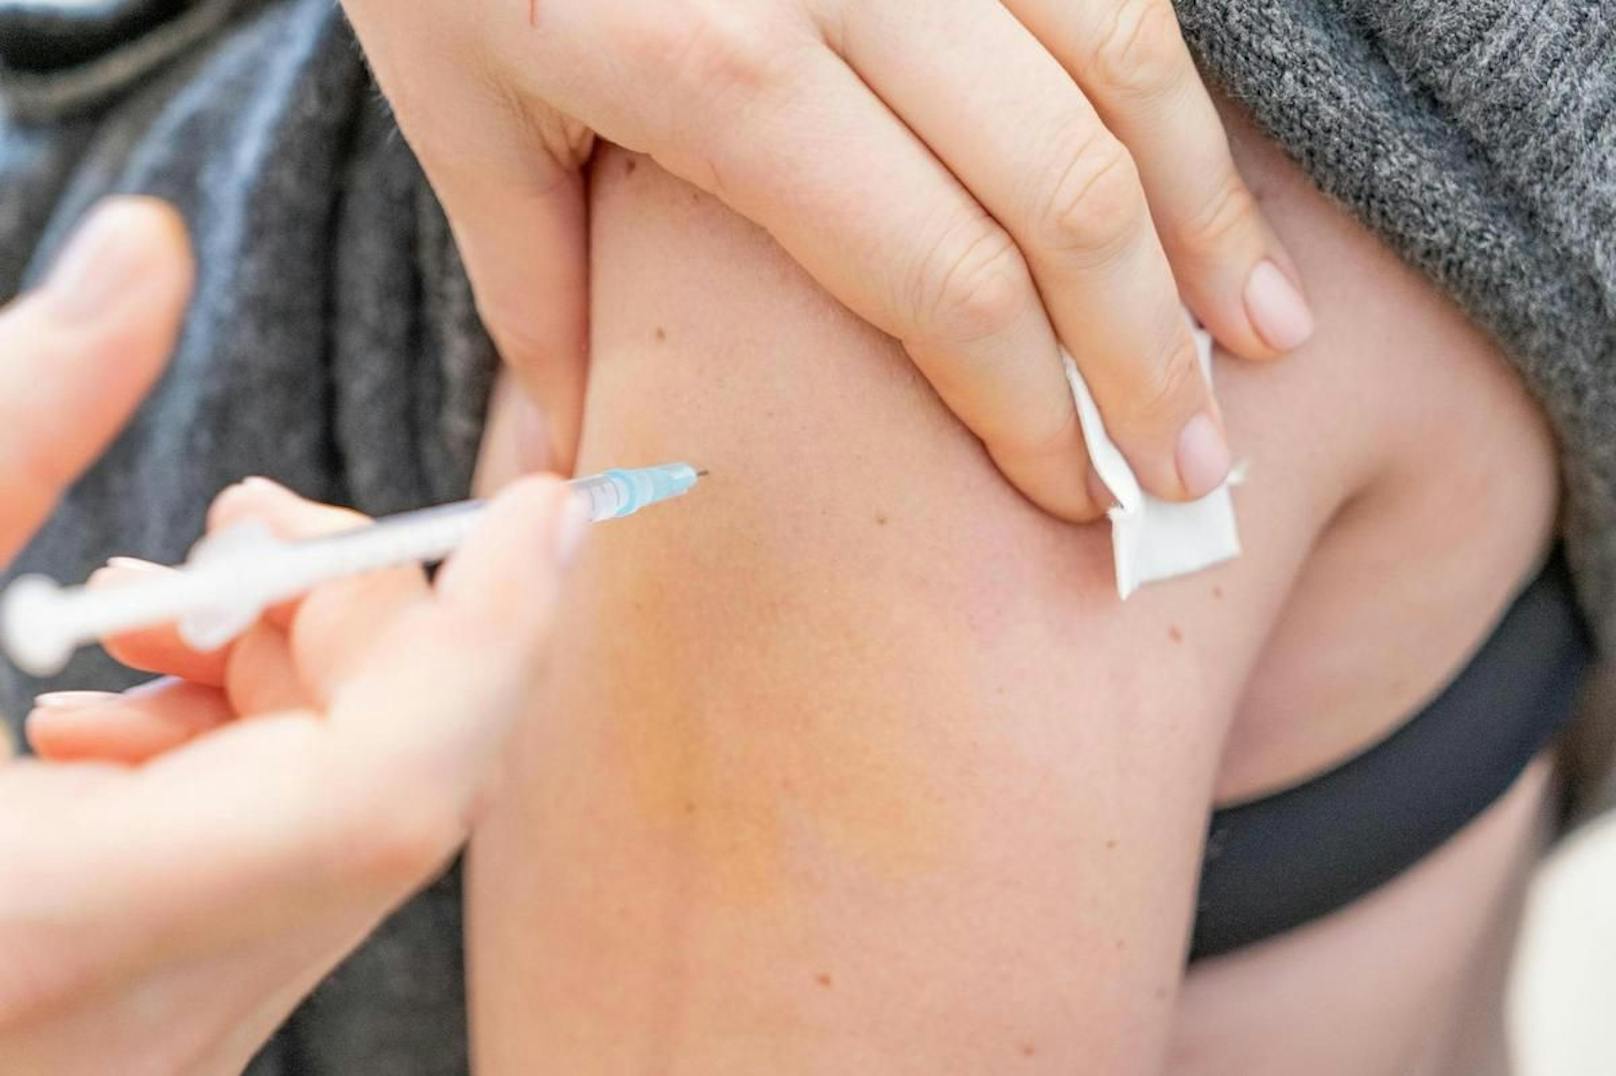 "Die Covid-Impfung hat nach unserem Wissensstand keine bekannten Auswirkungen auf die Wirkung hormoneller Verhütung", präzisiert Swissmedic-Sprecher Alex Josty.